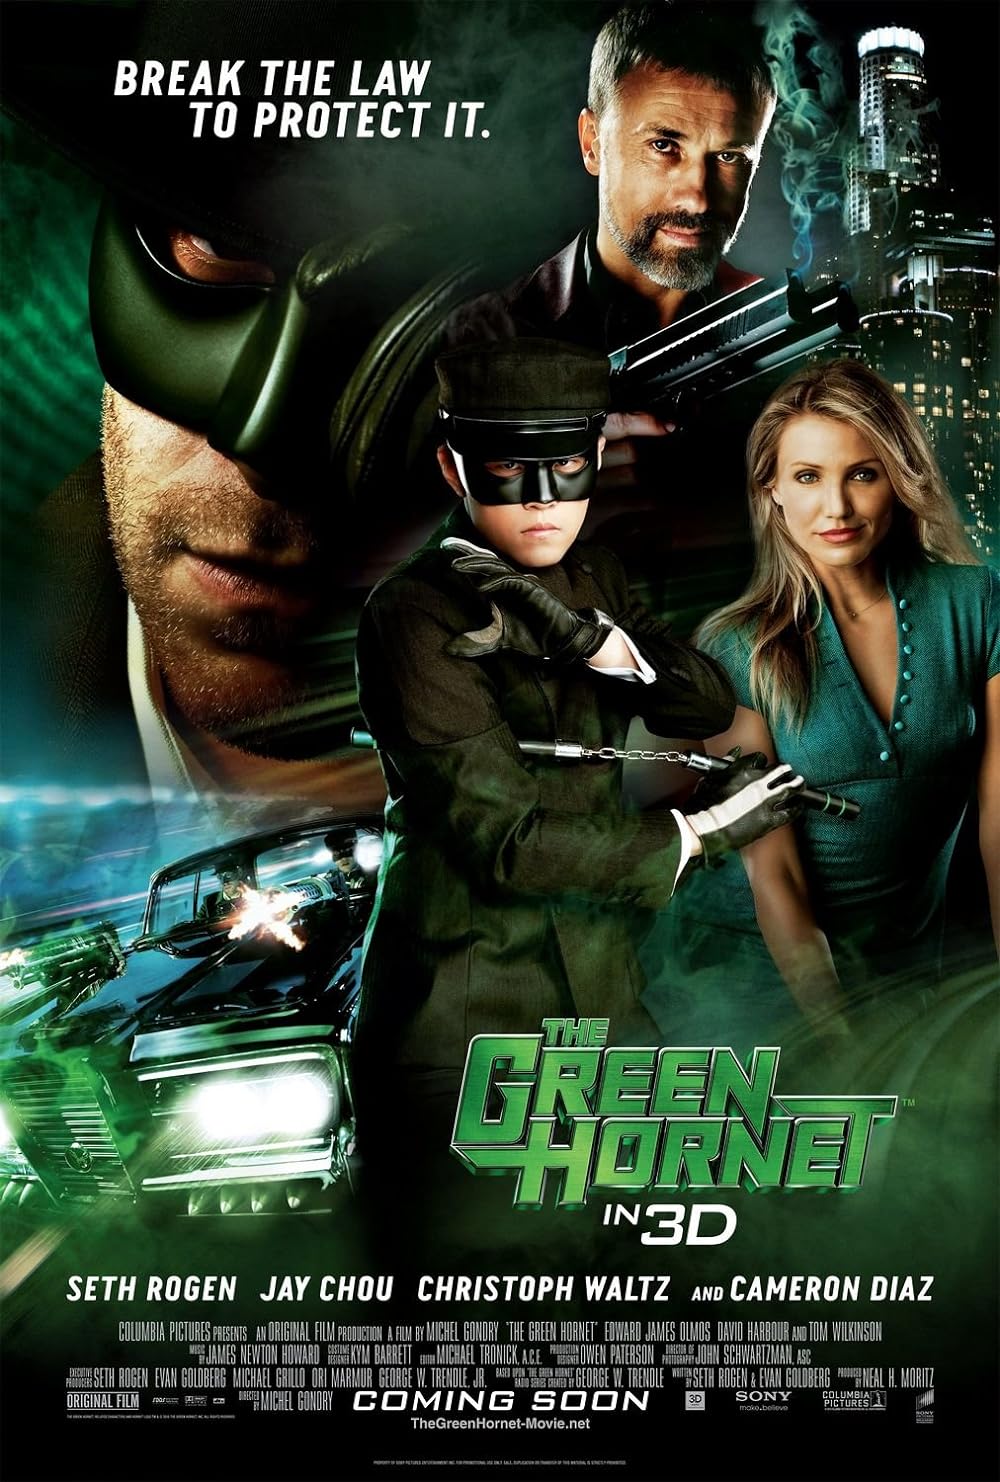 The Green Hornet (2011) 640Kbps 23.976Fps 48Khz 5.1Ch BluRay Turkish Audio TAC